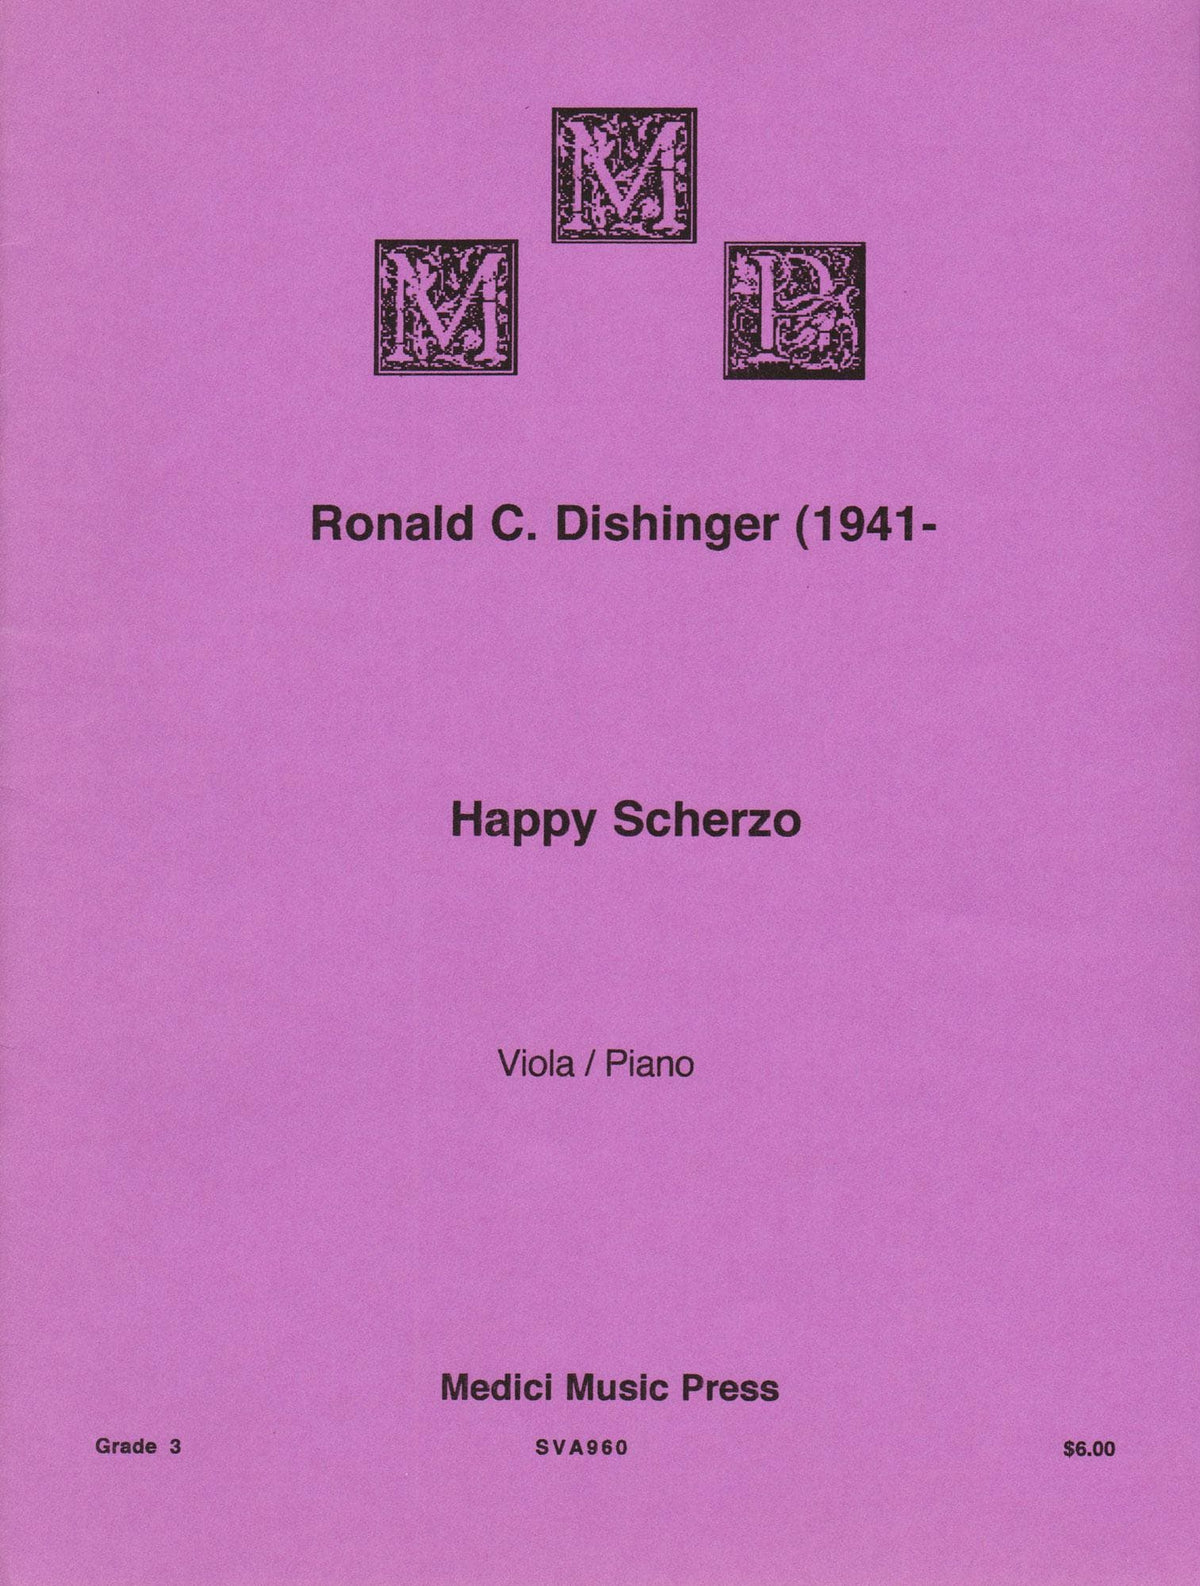 Dishinger, Ronald - Happy Scherzo - for Viola and Piano - Medici Music Press